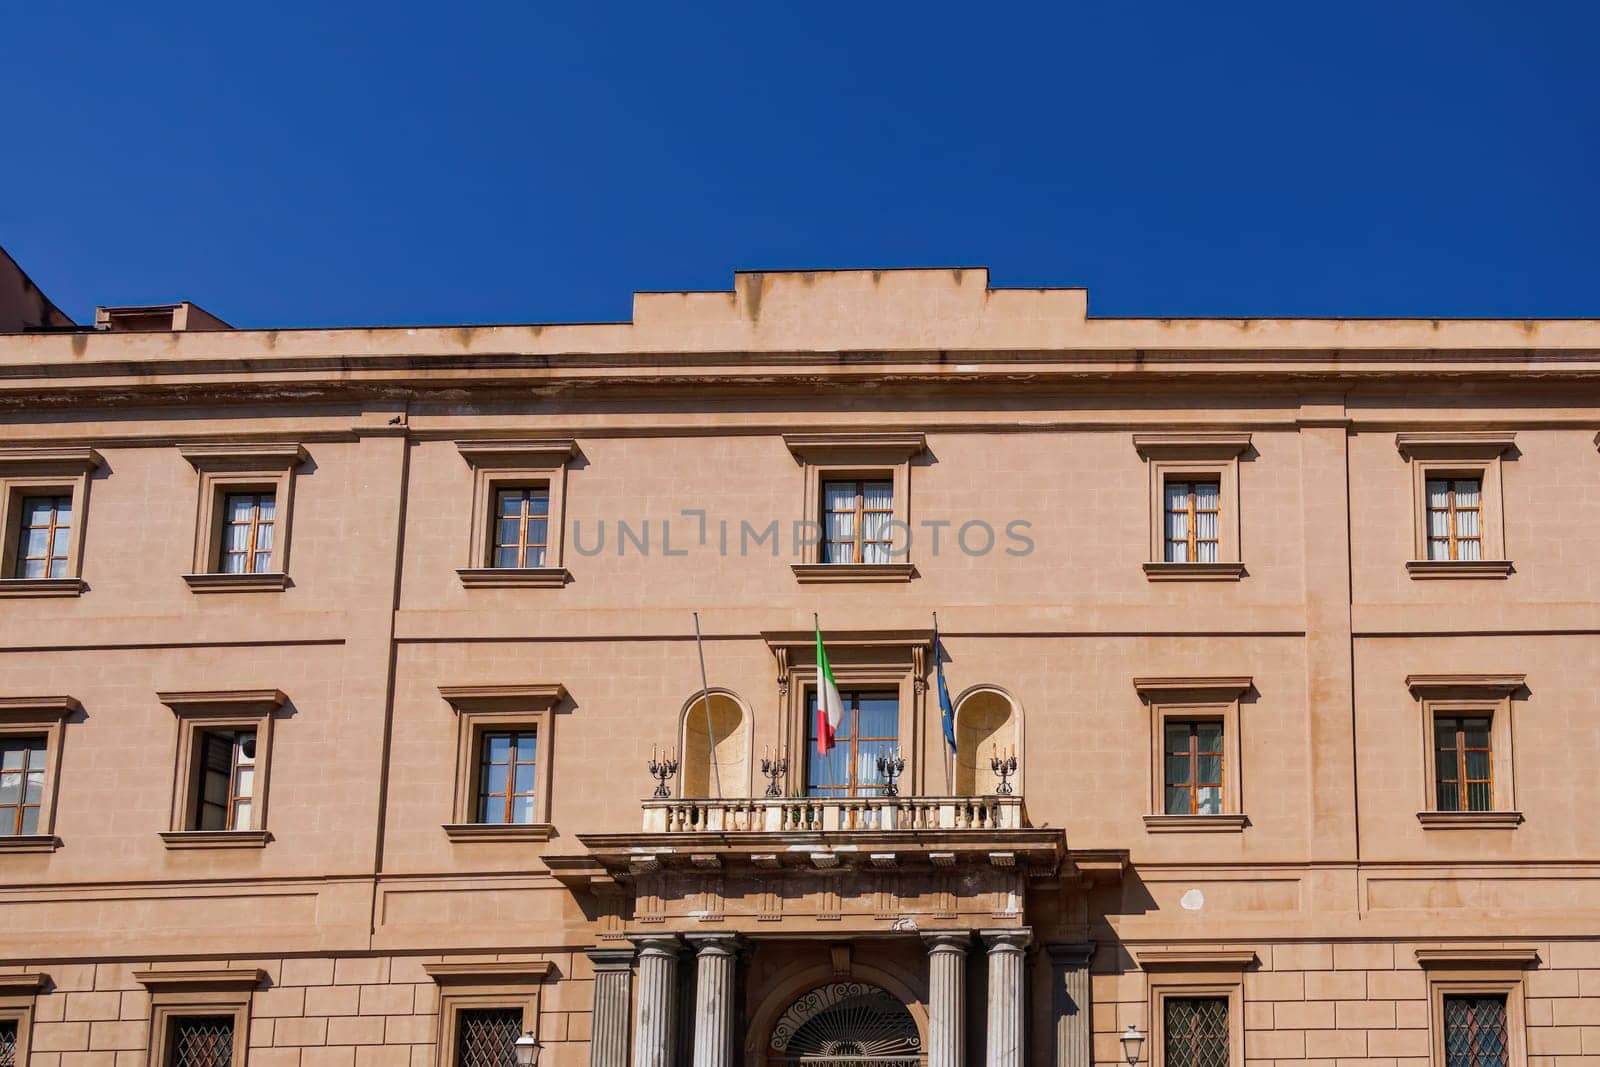 Palermo University Faculty Of Law Building facade in Sicily, Italy.